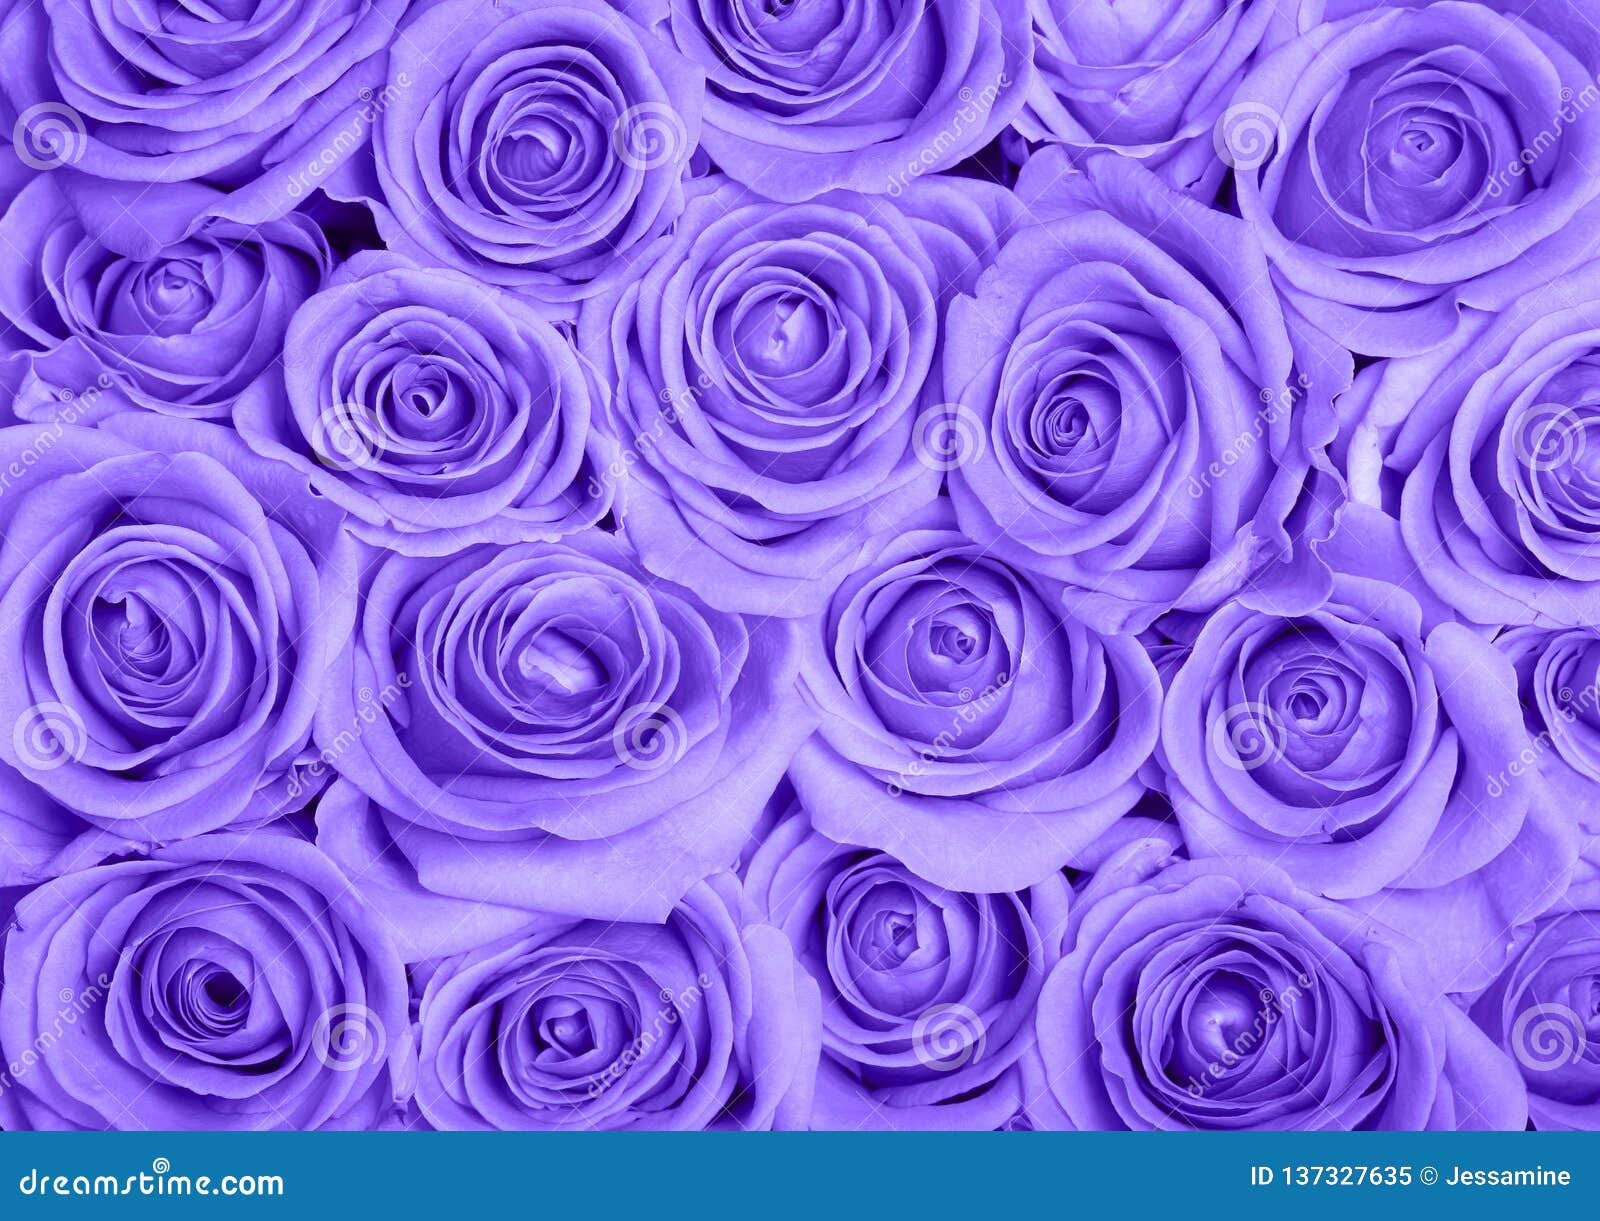 Hình ảnh hoa hồng tím - Nếu bạn đang tìm kiếm ý tưởng cho bó hoa cưới của mình, bộ sưu tập hình ảnh hoa hồng tím đầy sáng tạo này sẽ là nguồn cảm hứng không thể bỏ qua. Bạn sẽ được chiêm ngưỡng những bó hoa đẹp mắt và tinh tế đến từng chi tiết!